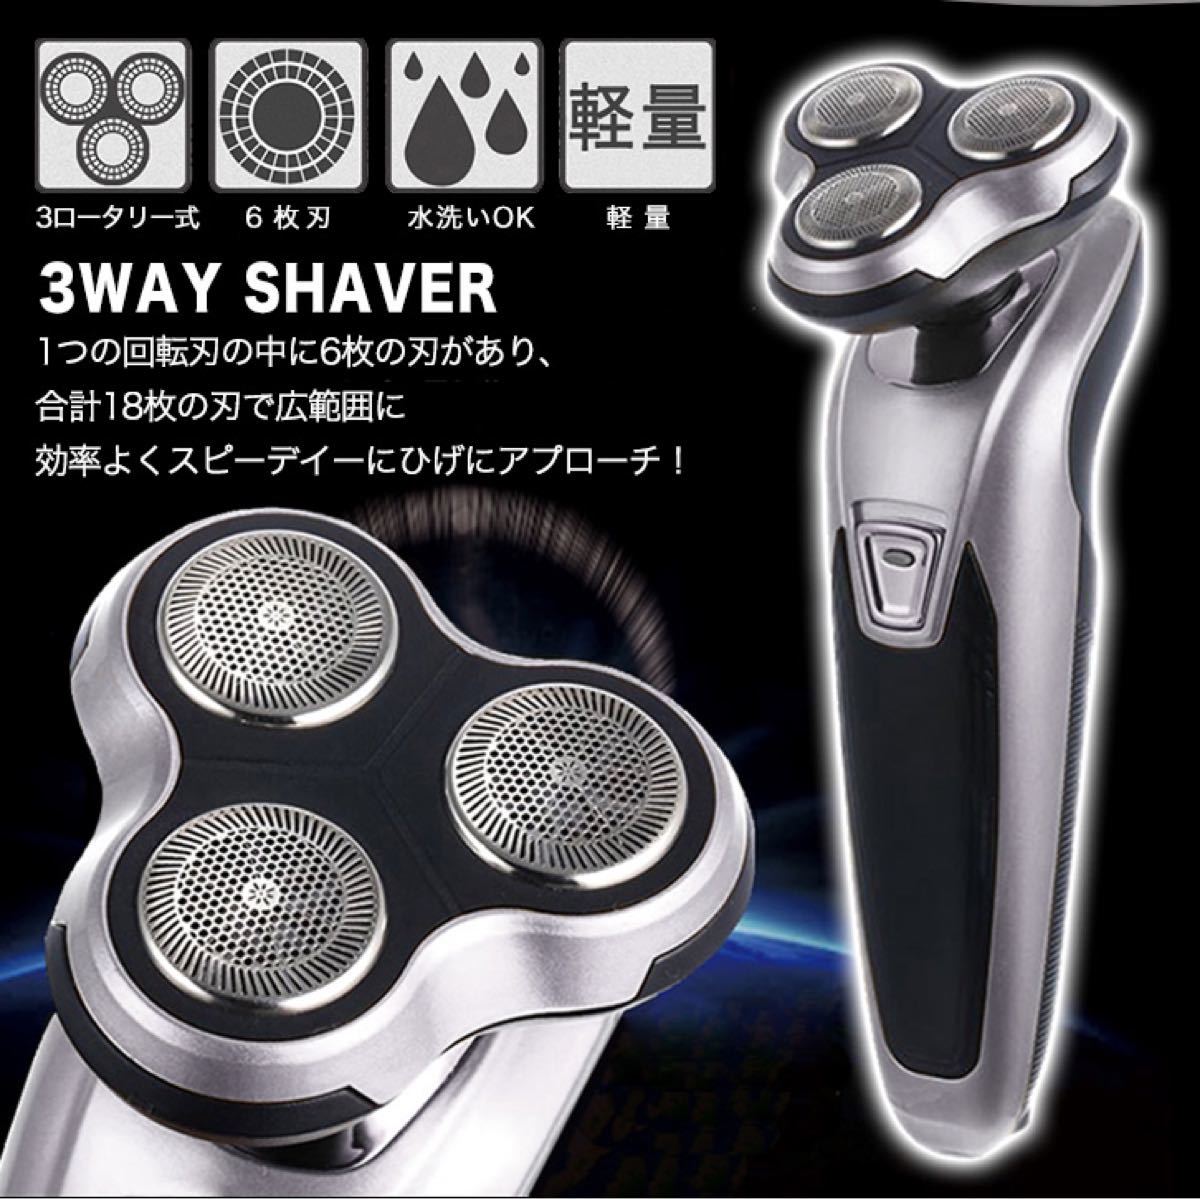 【新品】シェーバー 電動シェーバー 髭剃り 3wayシェーバー 3ロータリー式 6枚刃